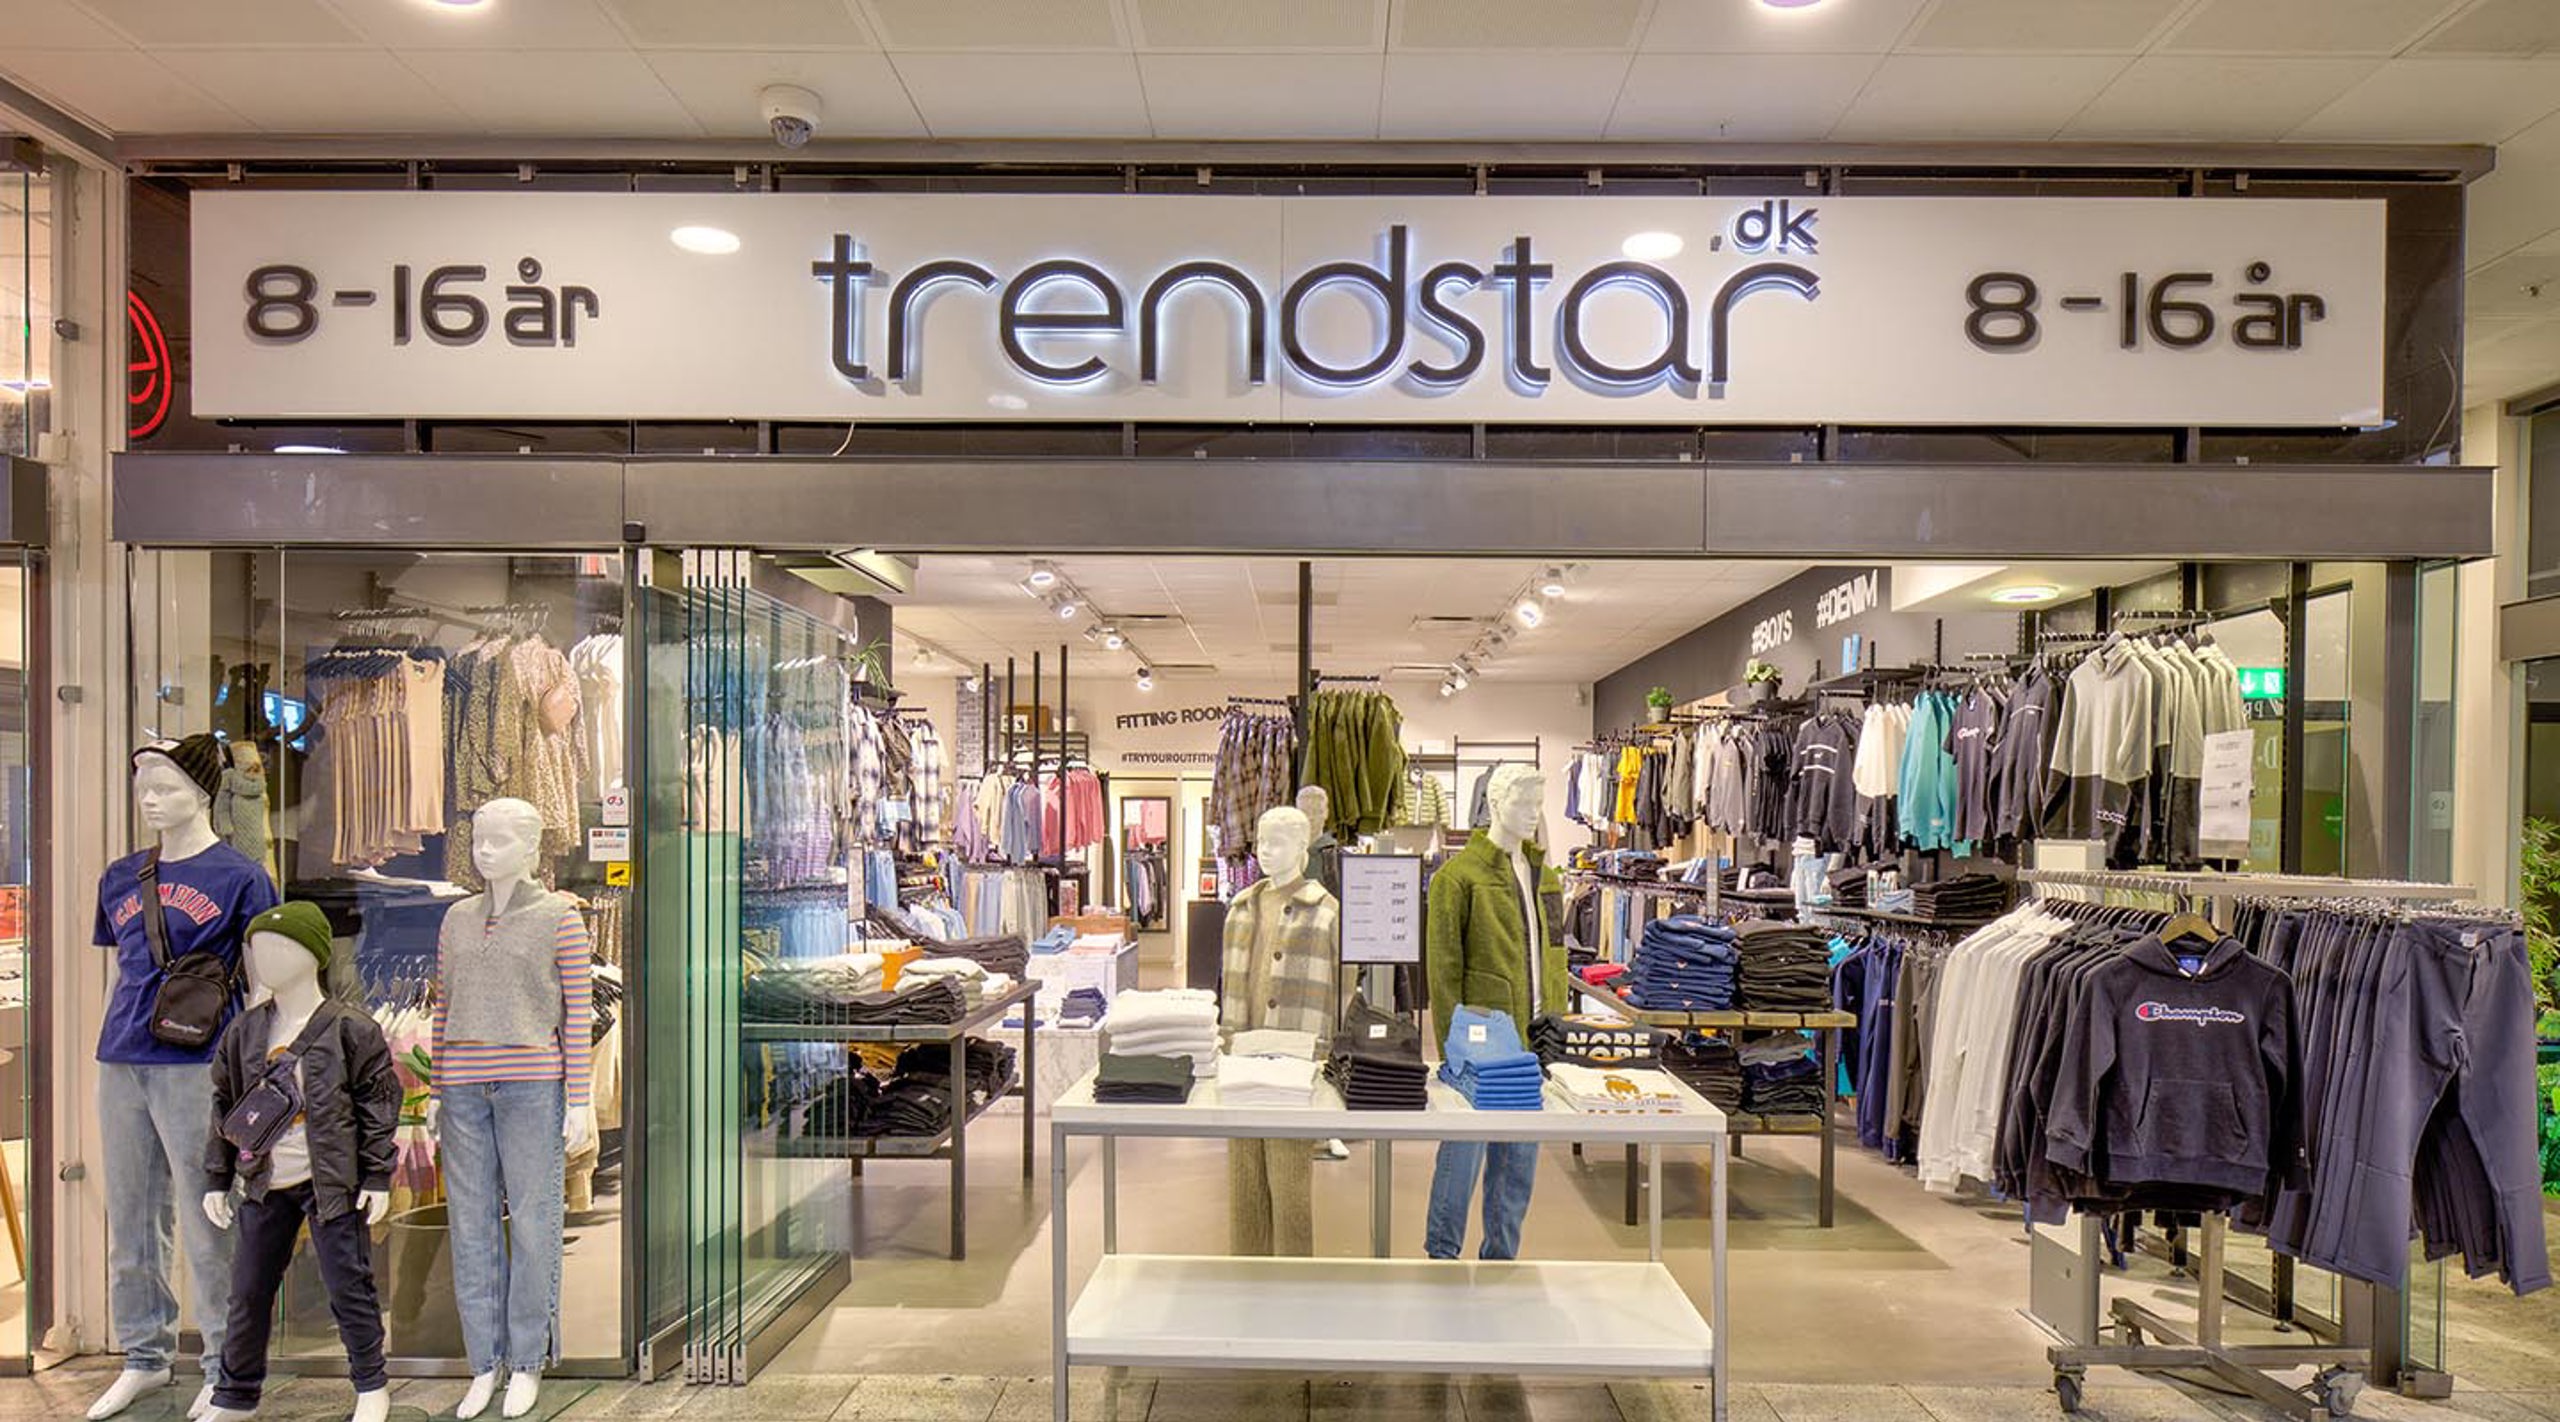 Trendstar - Køb smart tøj til drenge og piger - RO's